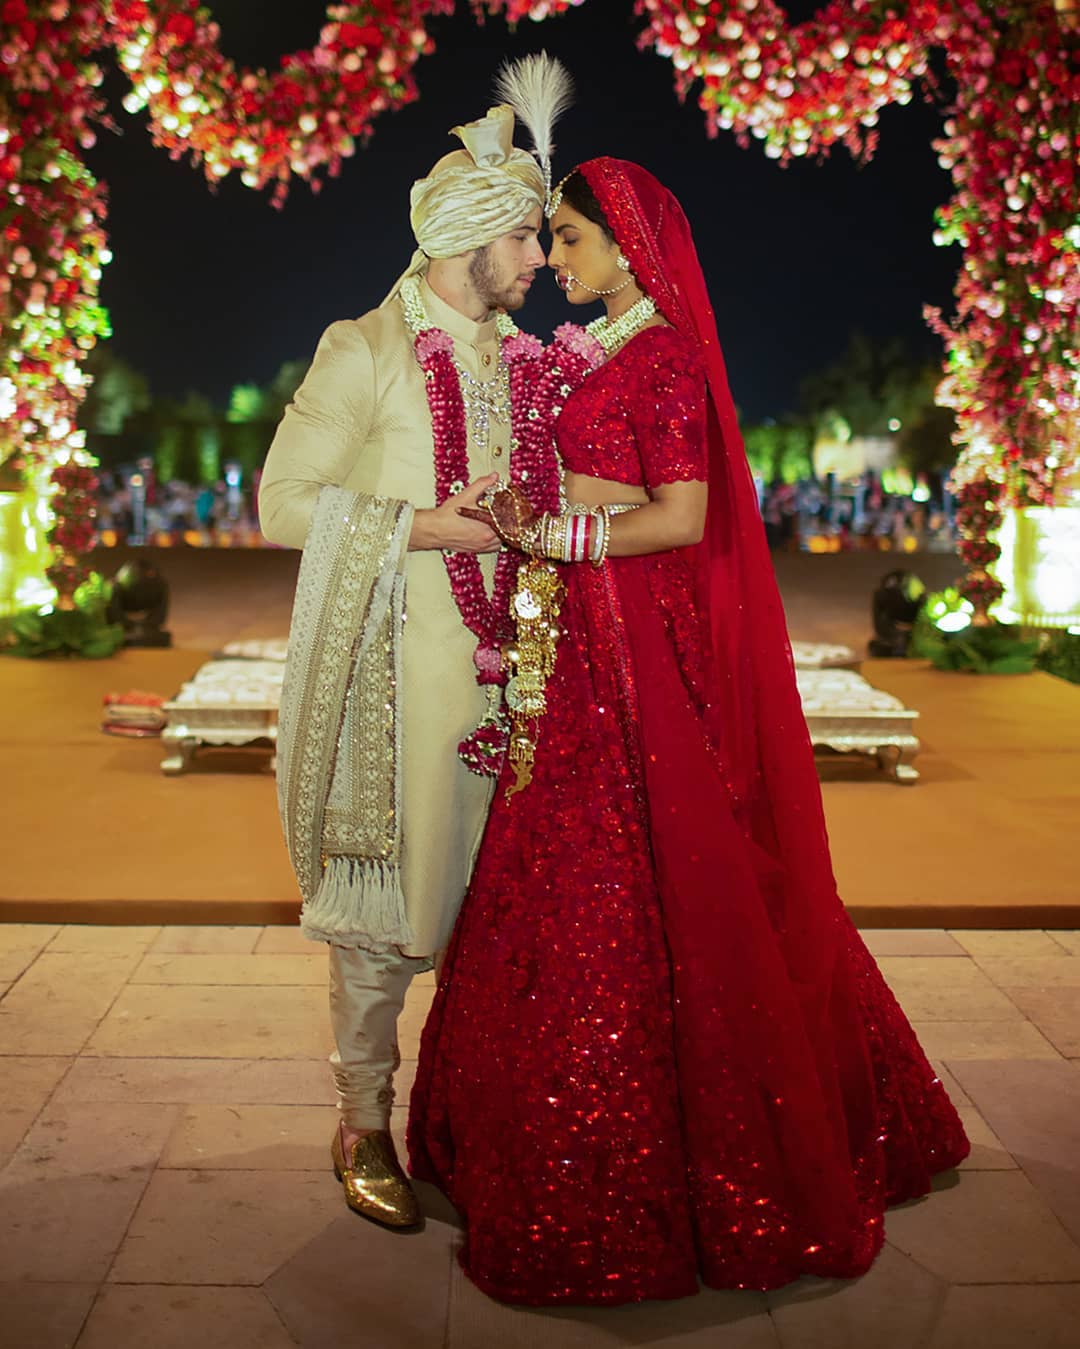 بريانكا فى حفل الزفاف على الطريقة الهندية